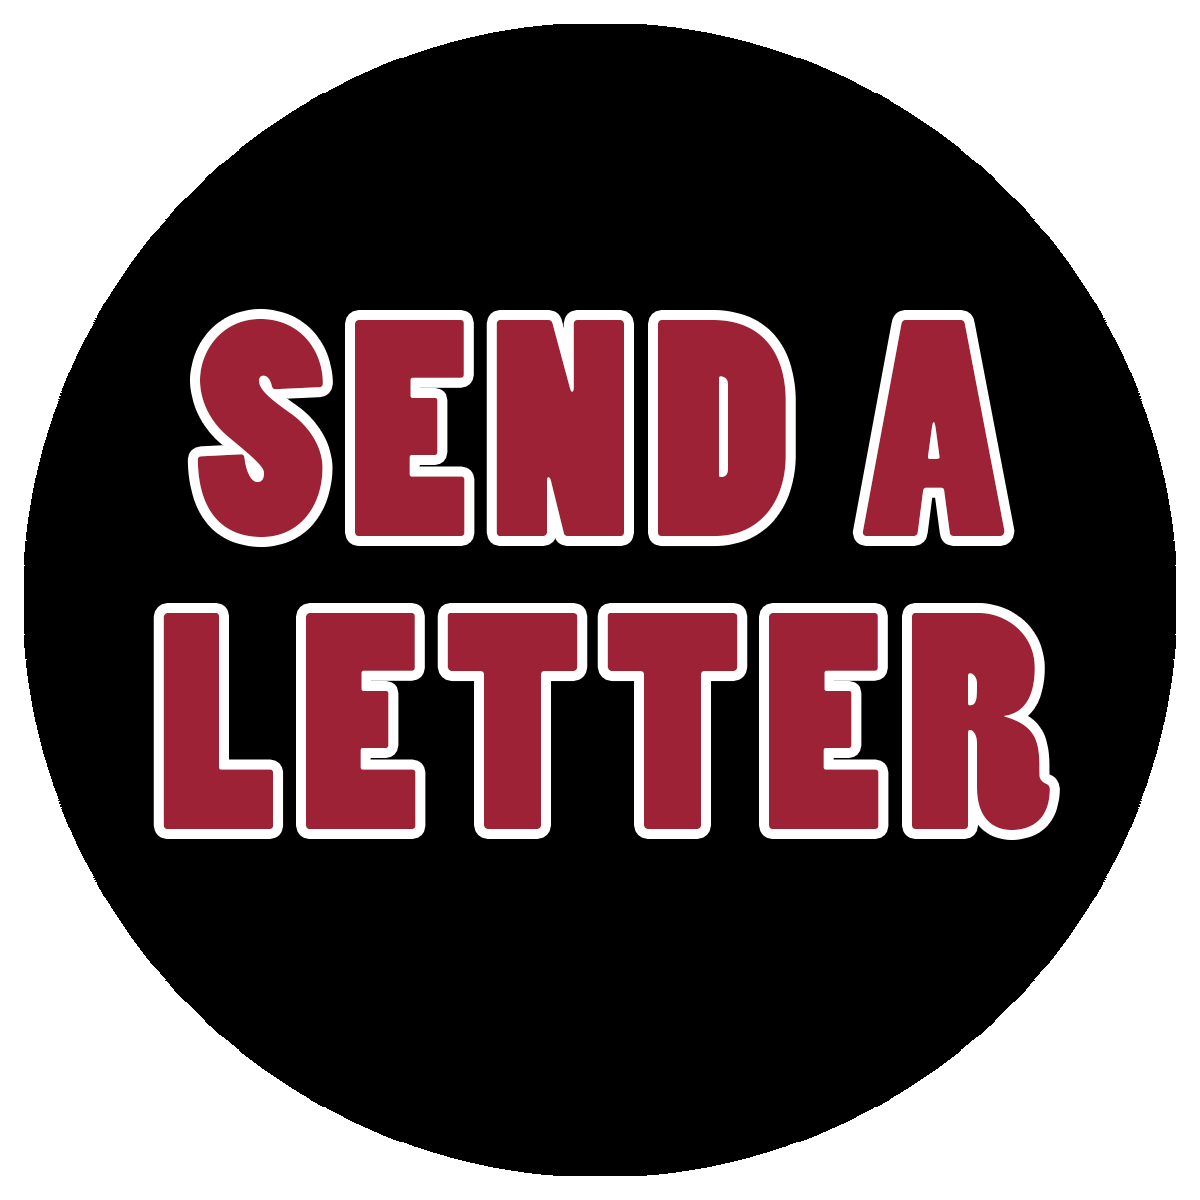 Send a Letter